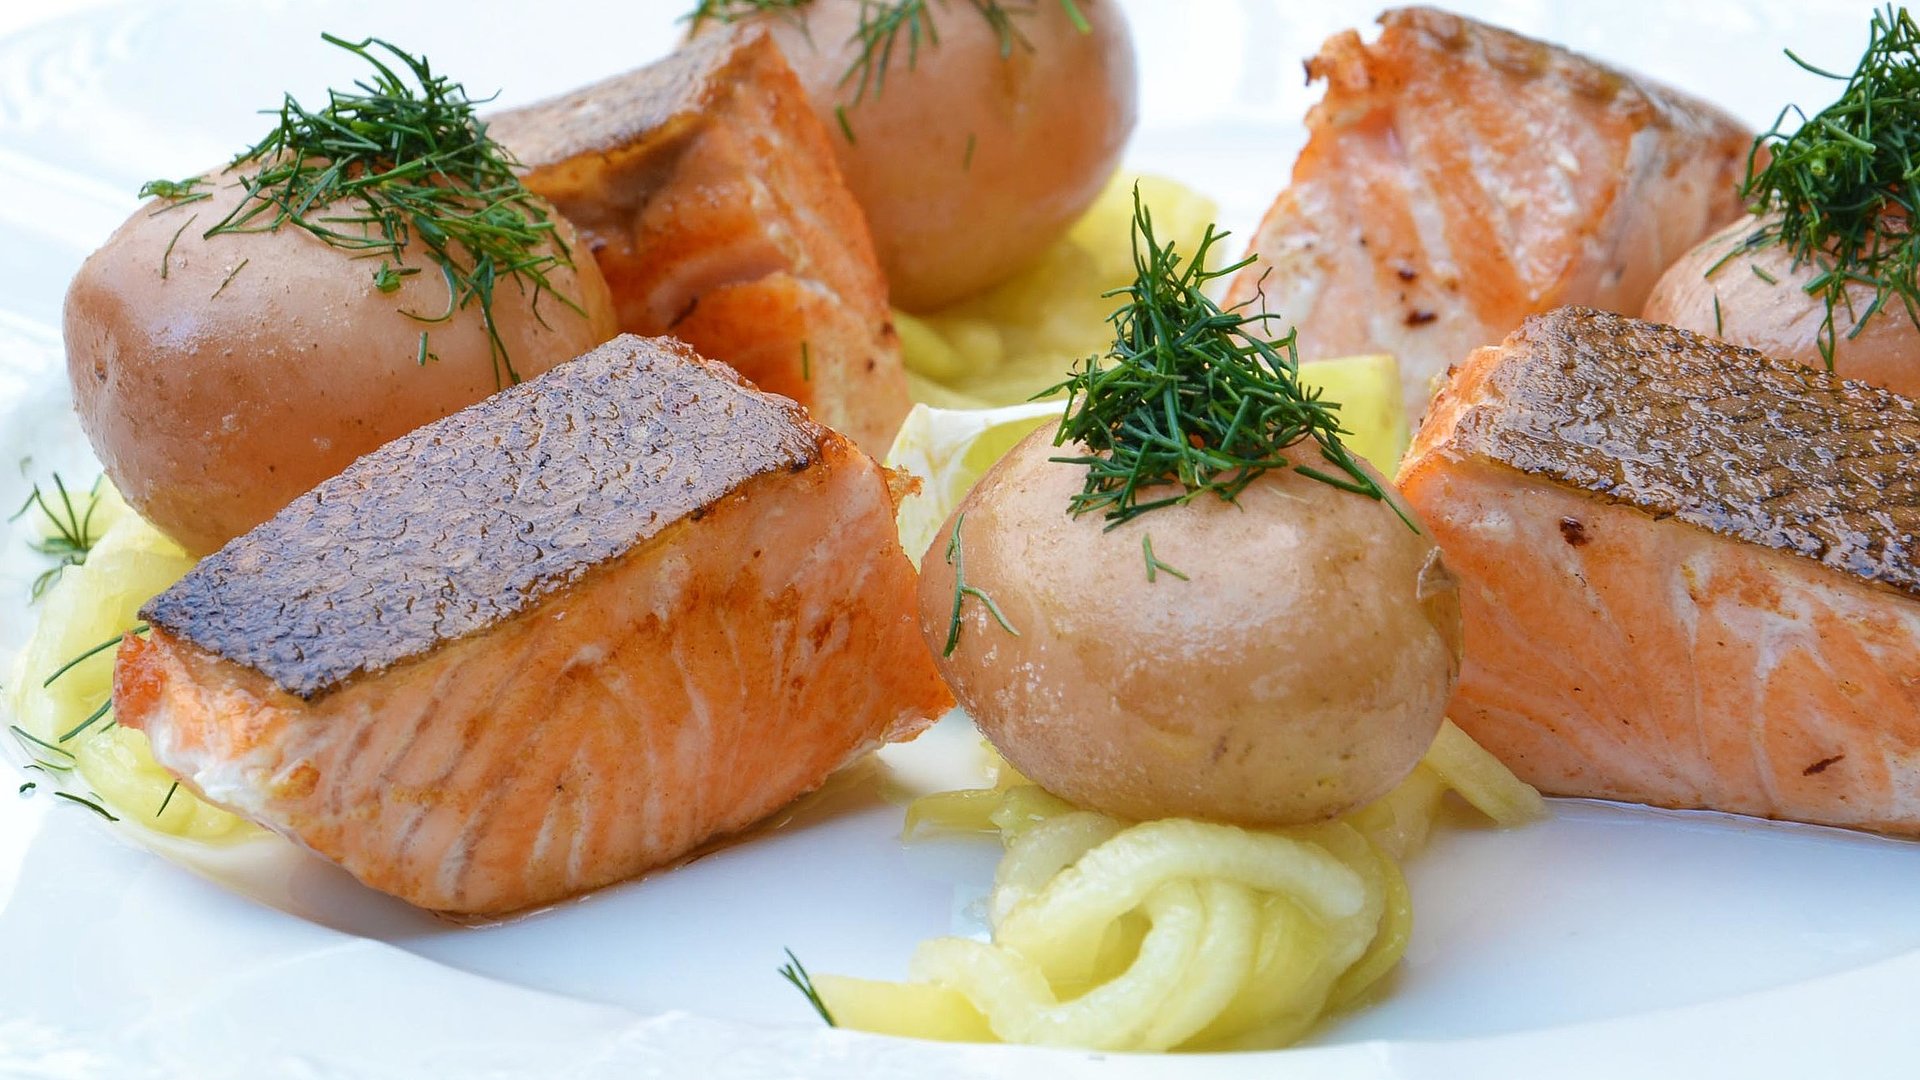 Gastronomie in Ingolstadt - Teller gefüllt mit frischem Lamm, Kräuterbutter, gebratenen Kartoffeln und Salat